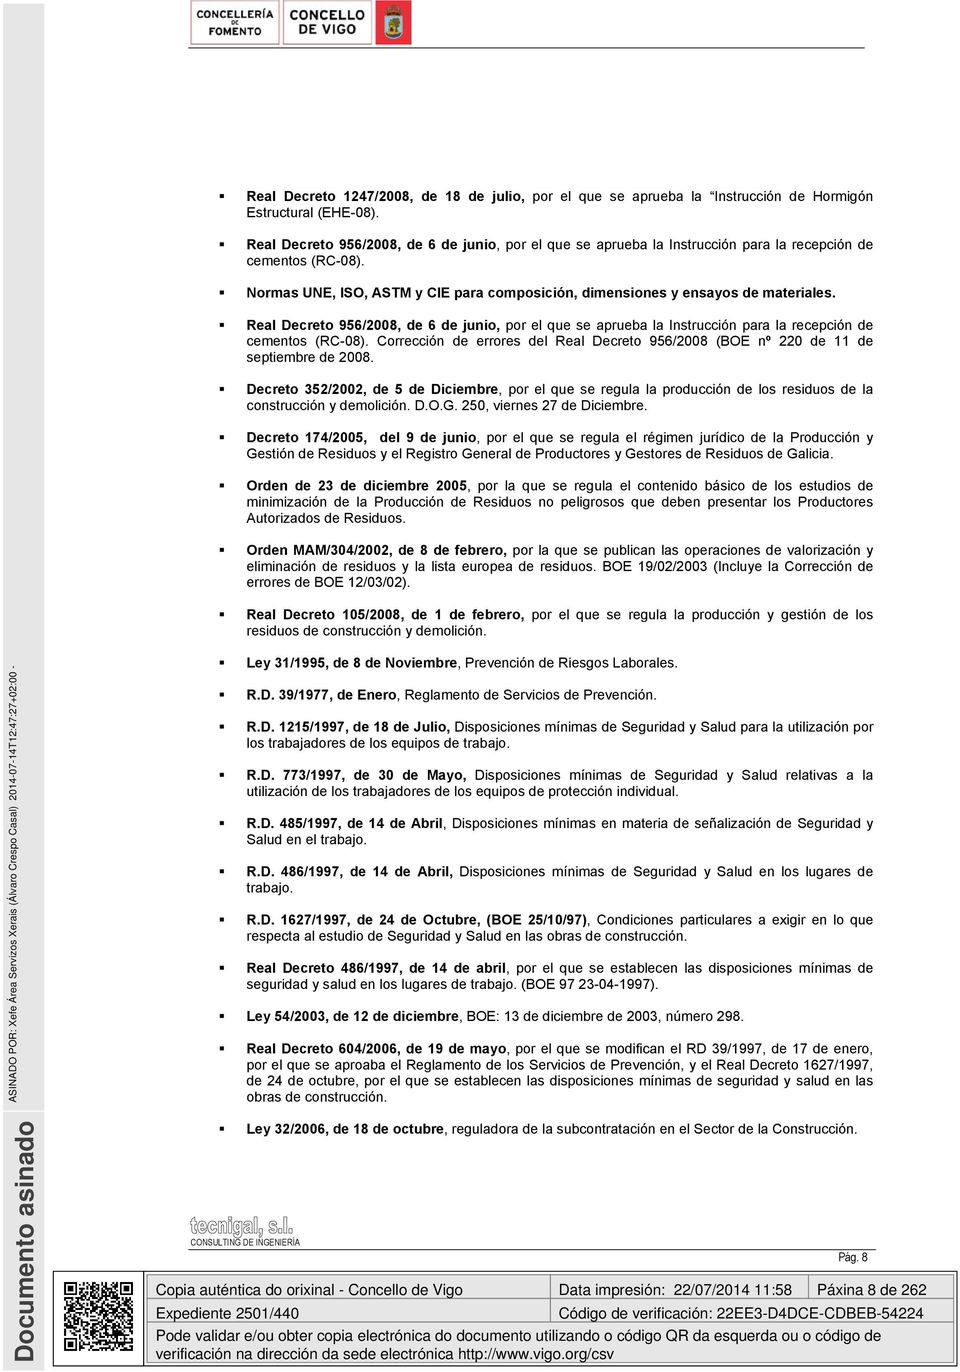 Real Decreto 956/2008, de 6 de junio, por el que se aprueba la Instrucción para la recepción de cementos (RC-08).